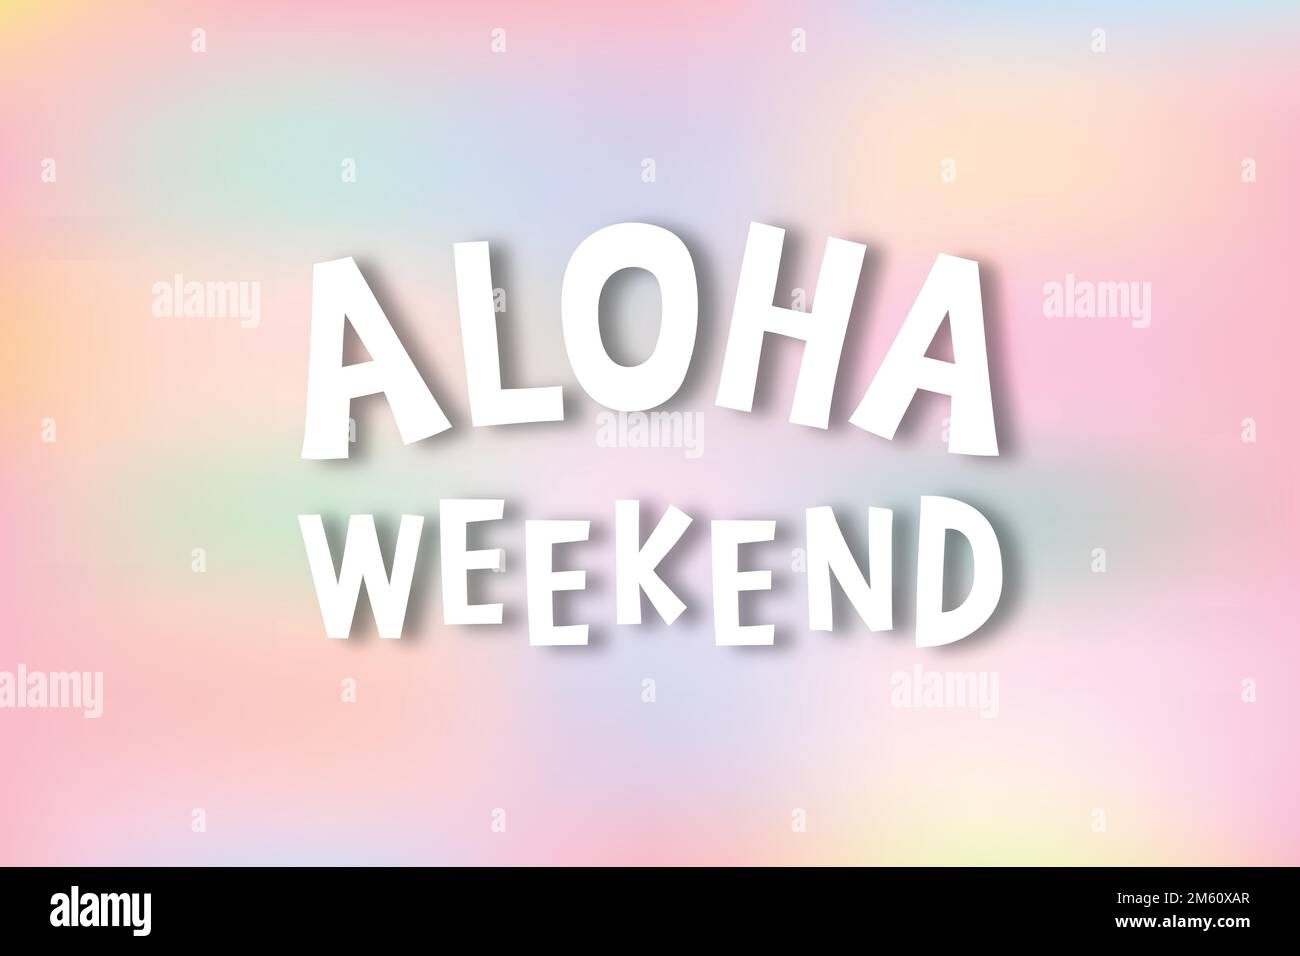 Weiße Aloha-Wochenendtypographie auf einem pastellfarbenen Hintergrundvektor Stock Vektor